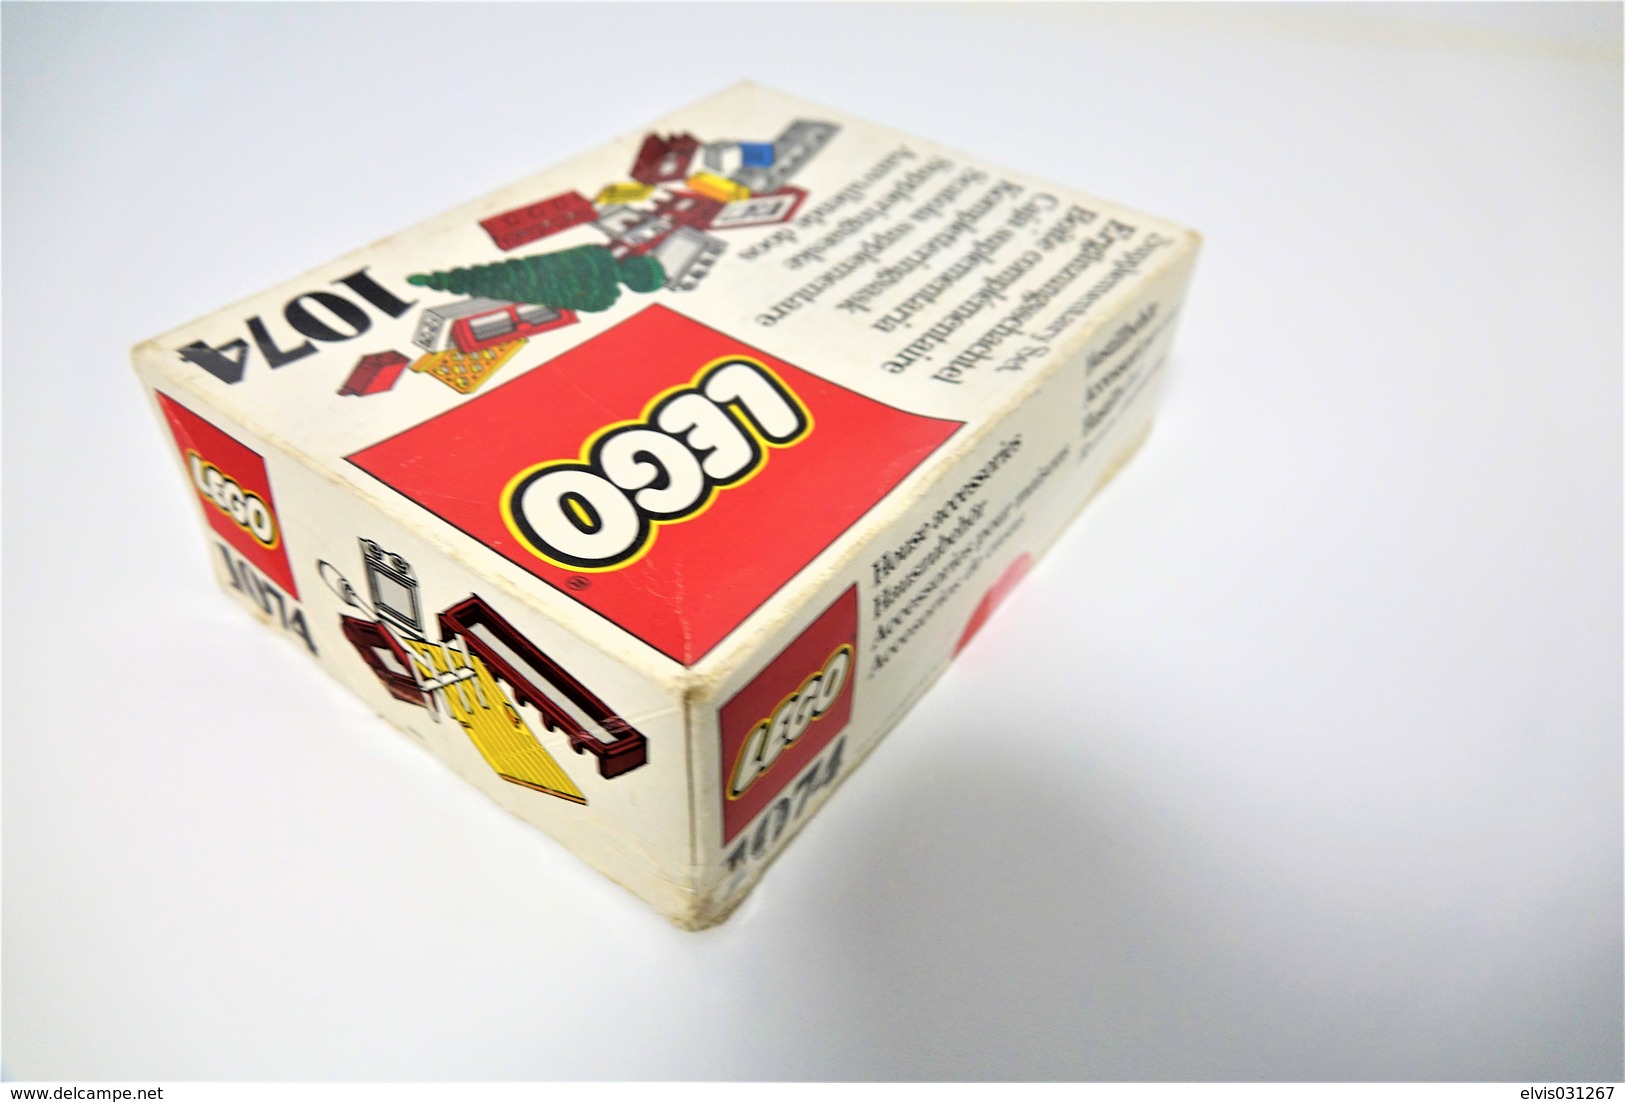 LEGO - 1074 Supplementary Box -very Rare - Original Box - Original Lego 1976 - Vintage - Catalogs